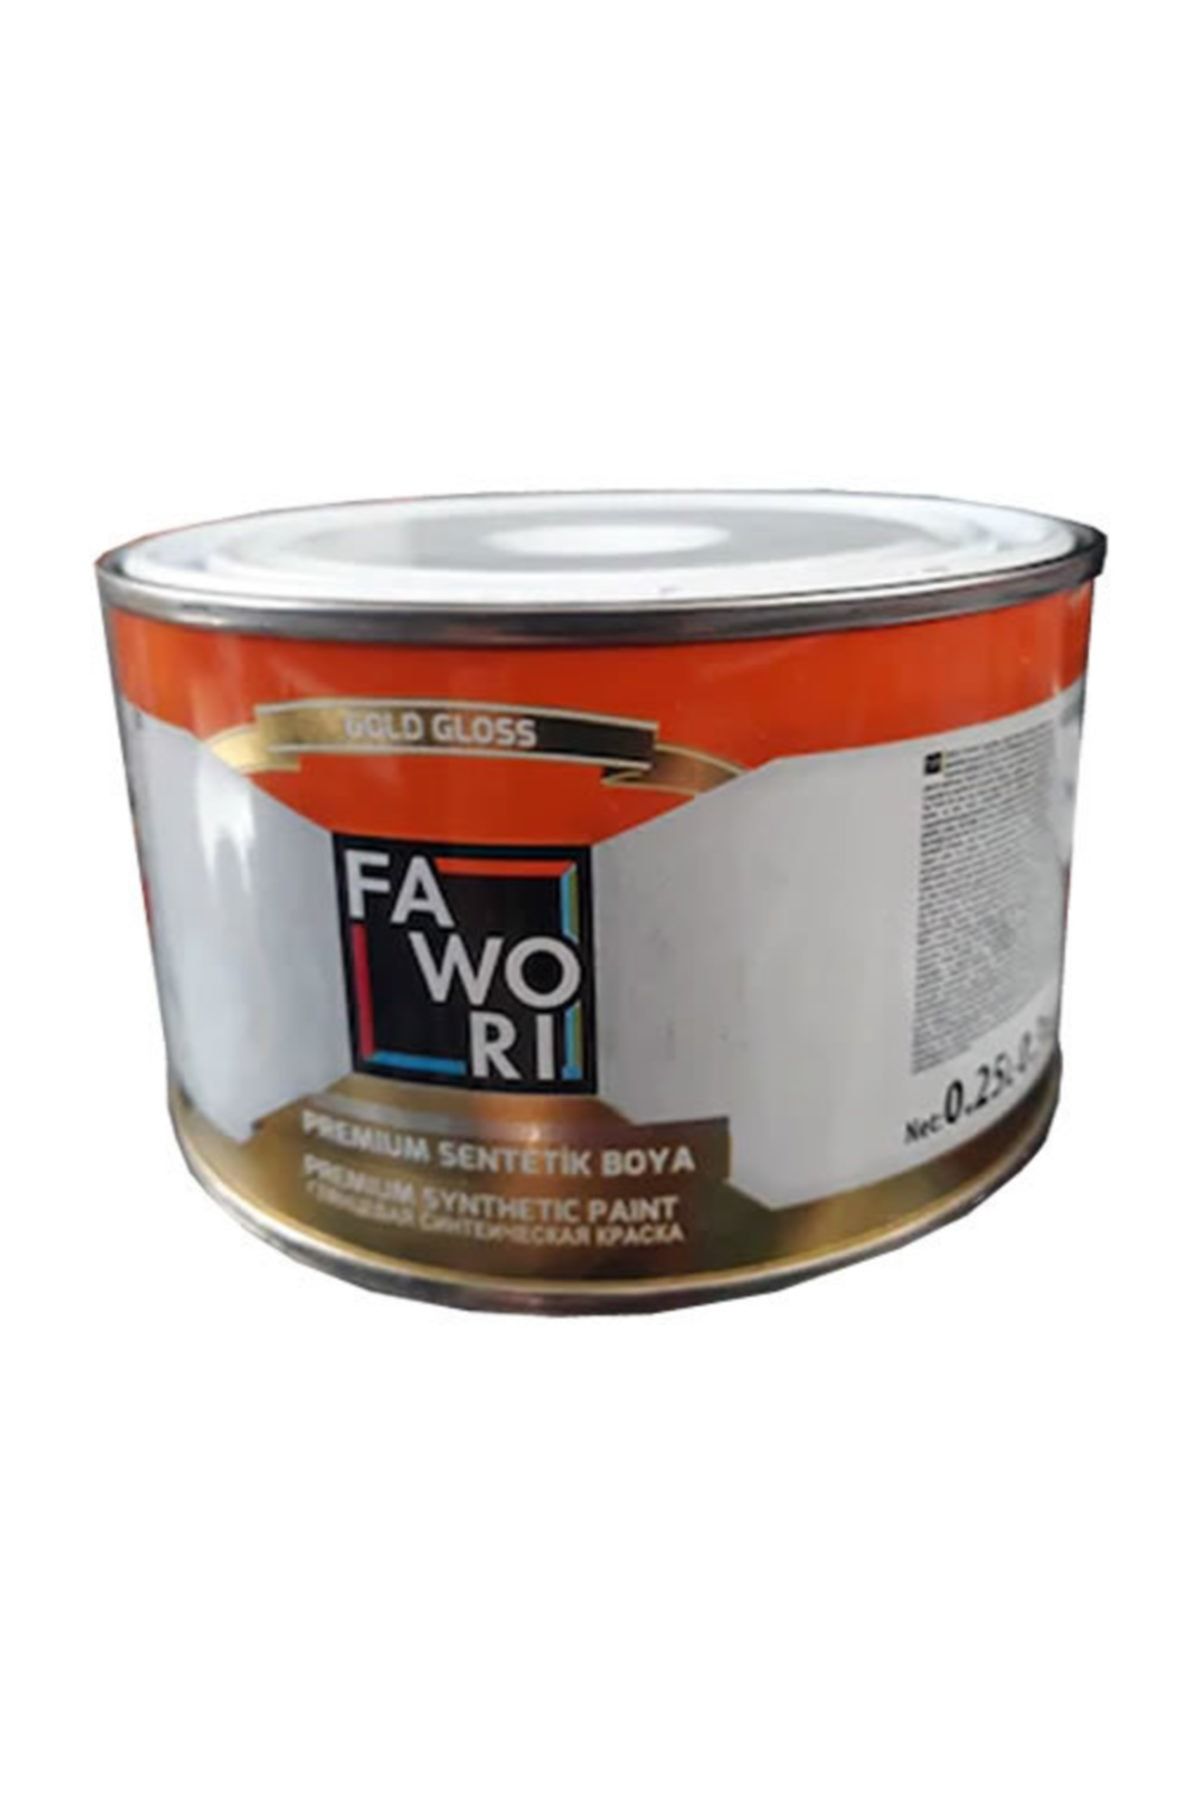 Fawori Premium Sentetik Yağlı Boya 0.25lt - Bayrak Kırmızı